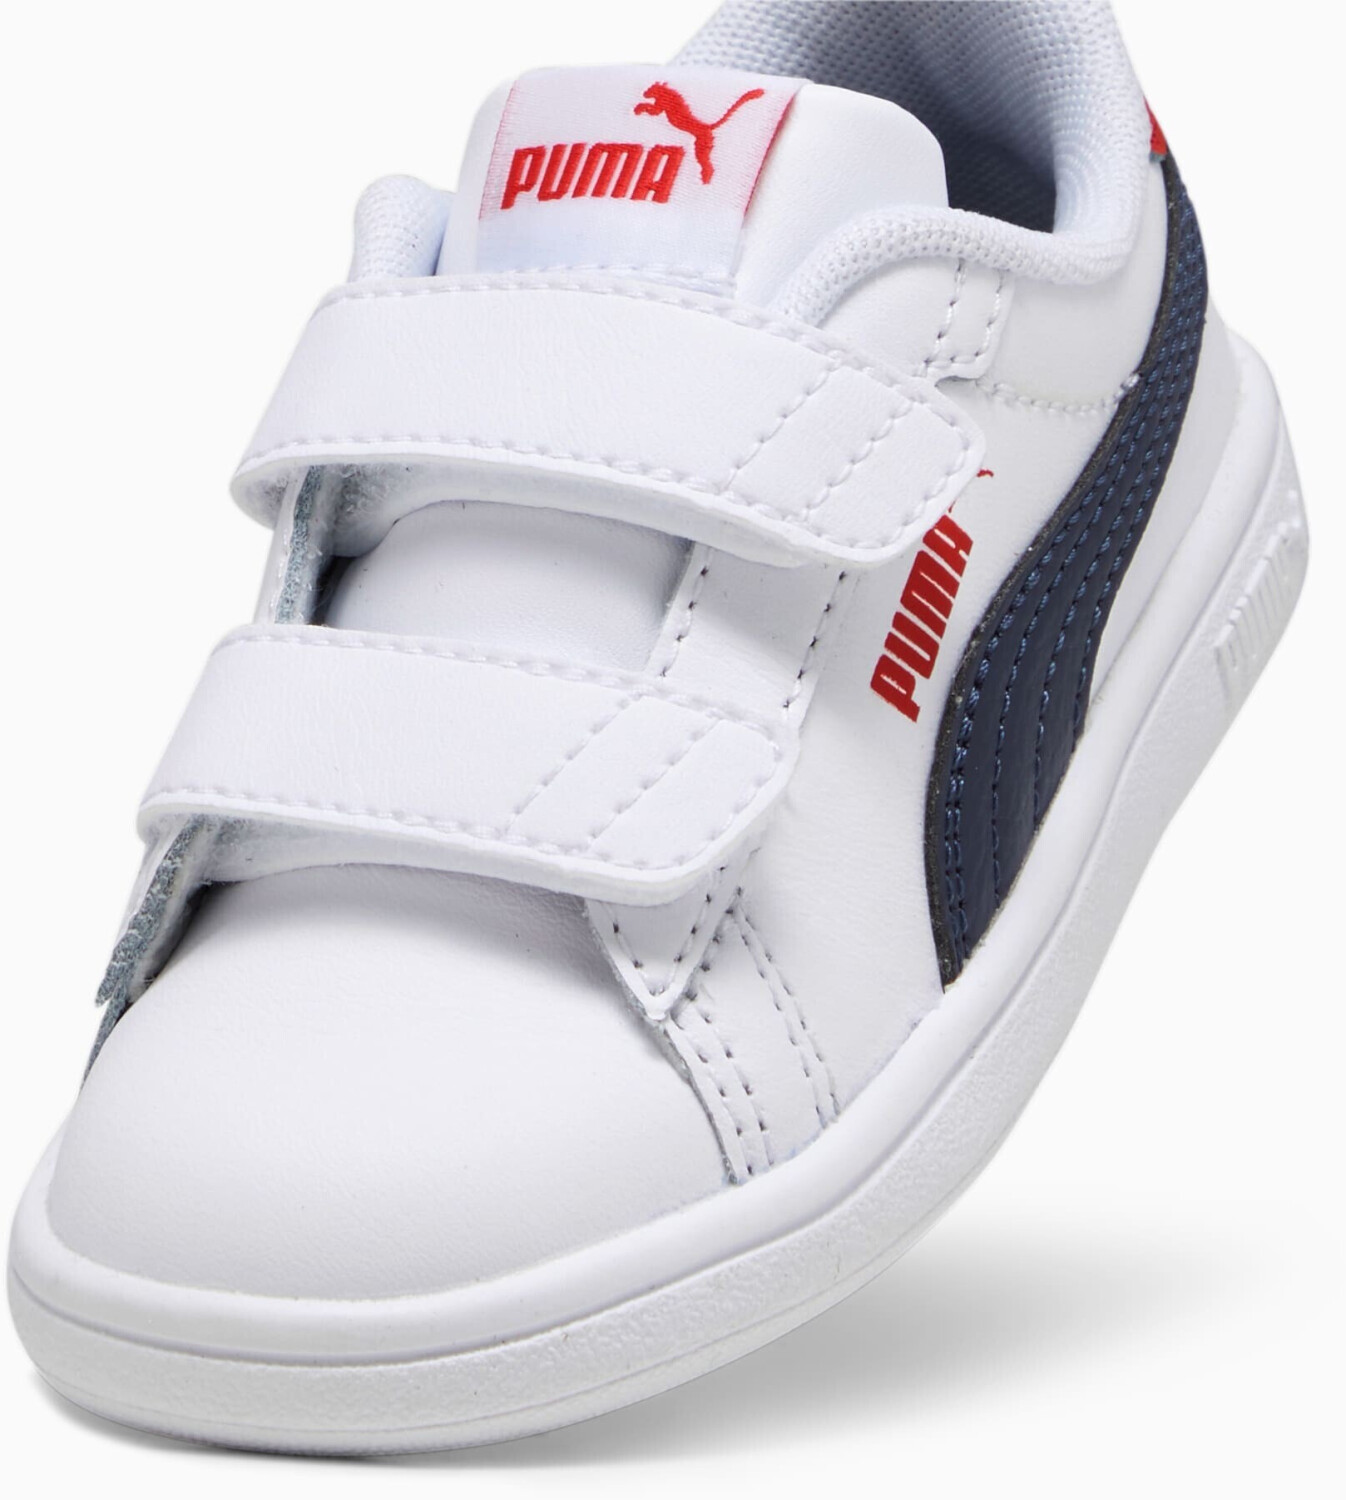 Puma Smash 3.0 Leather V Baby (392034-11) puma white/puma navy/for all time  red desde 41,95 € | Compara precios en idealo